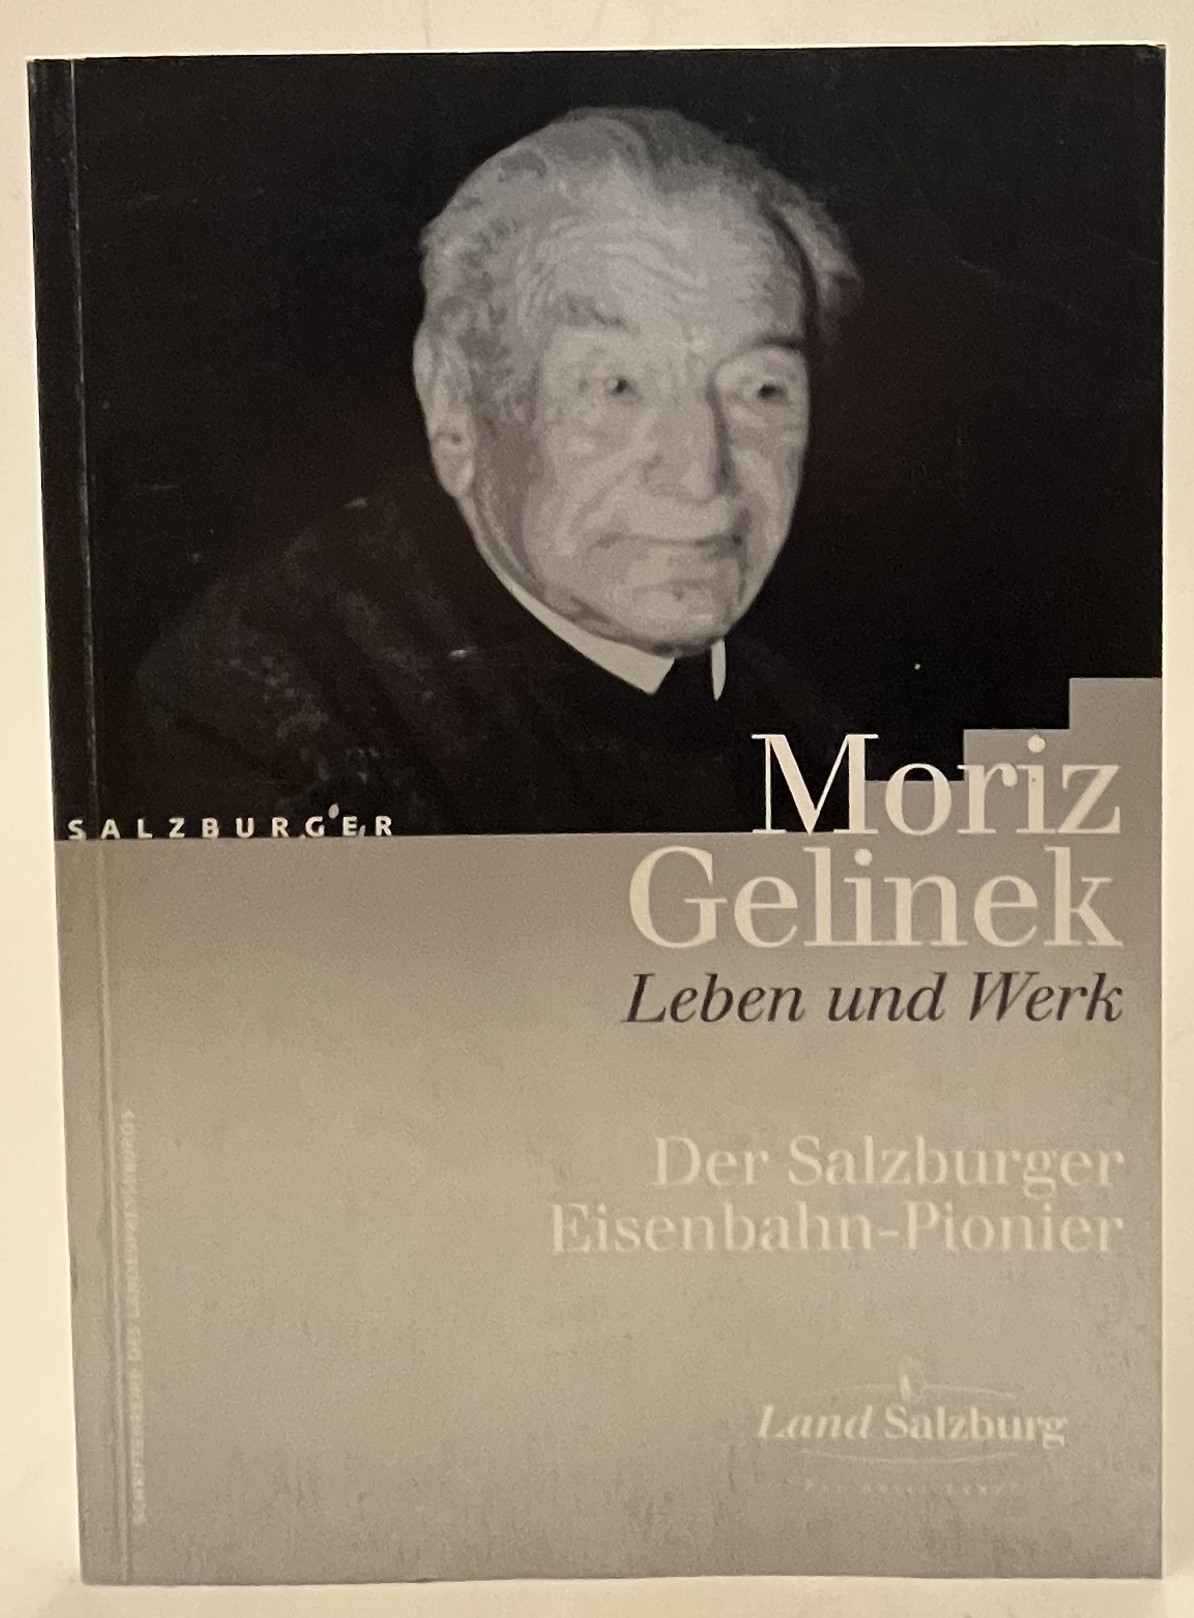 Moriz Gelinek. Leben und Werk. Der Salzburger Eisenbahn-Pionier - Floimair, Roland (Hg.)